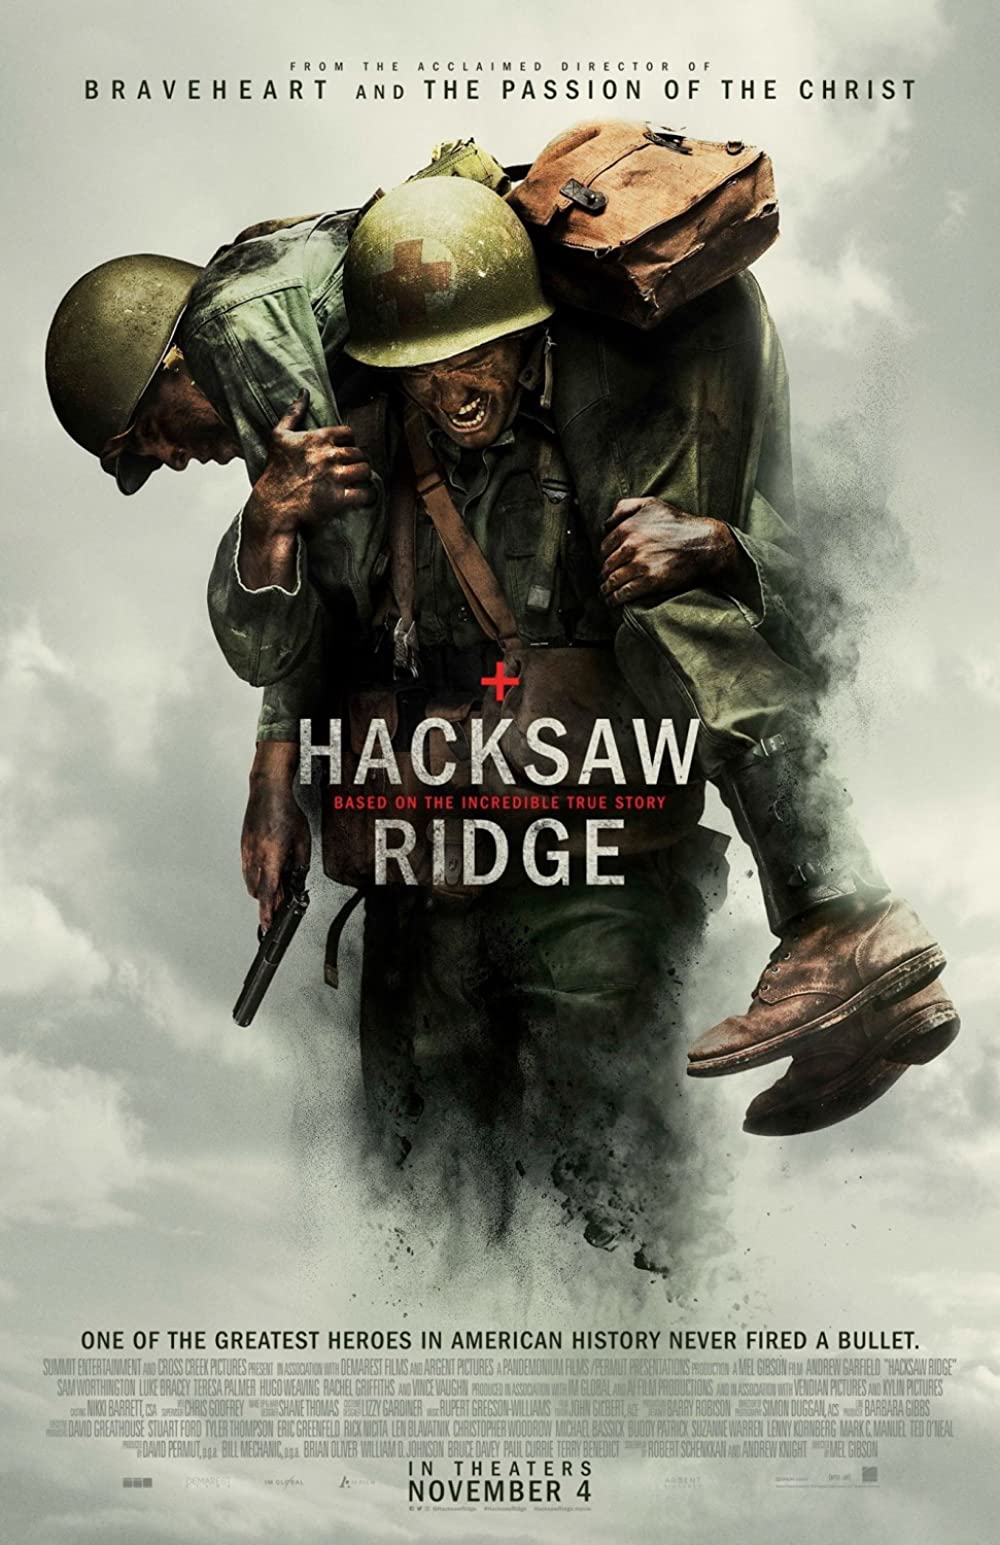 11 Film rekomendasi Netflix kisah kehidupan tentara, pilu dan heroik